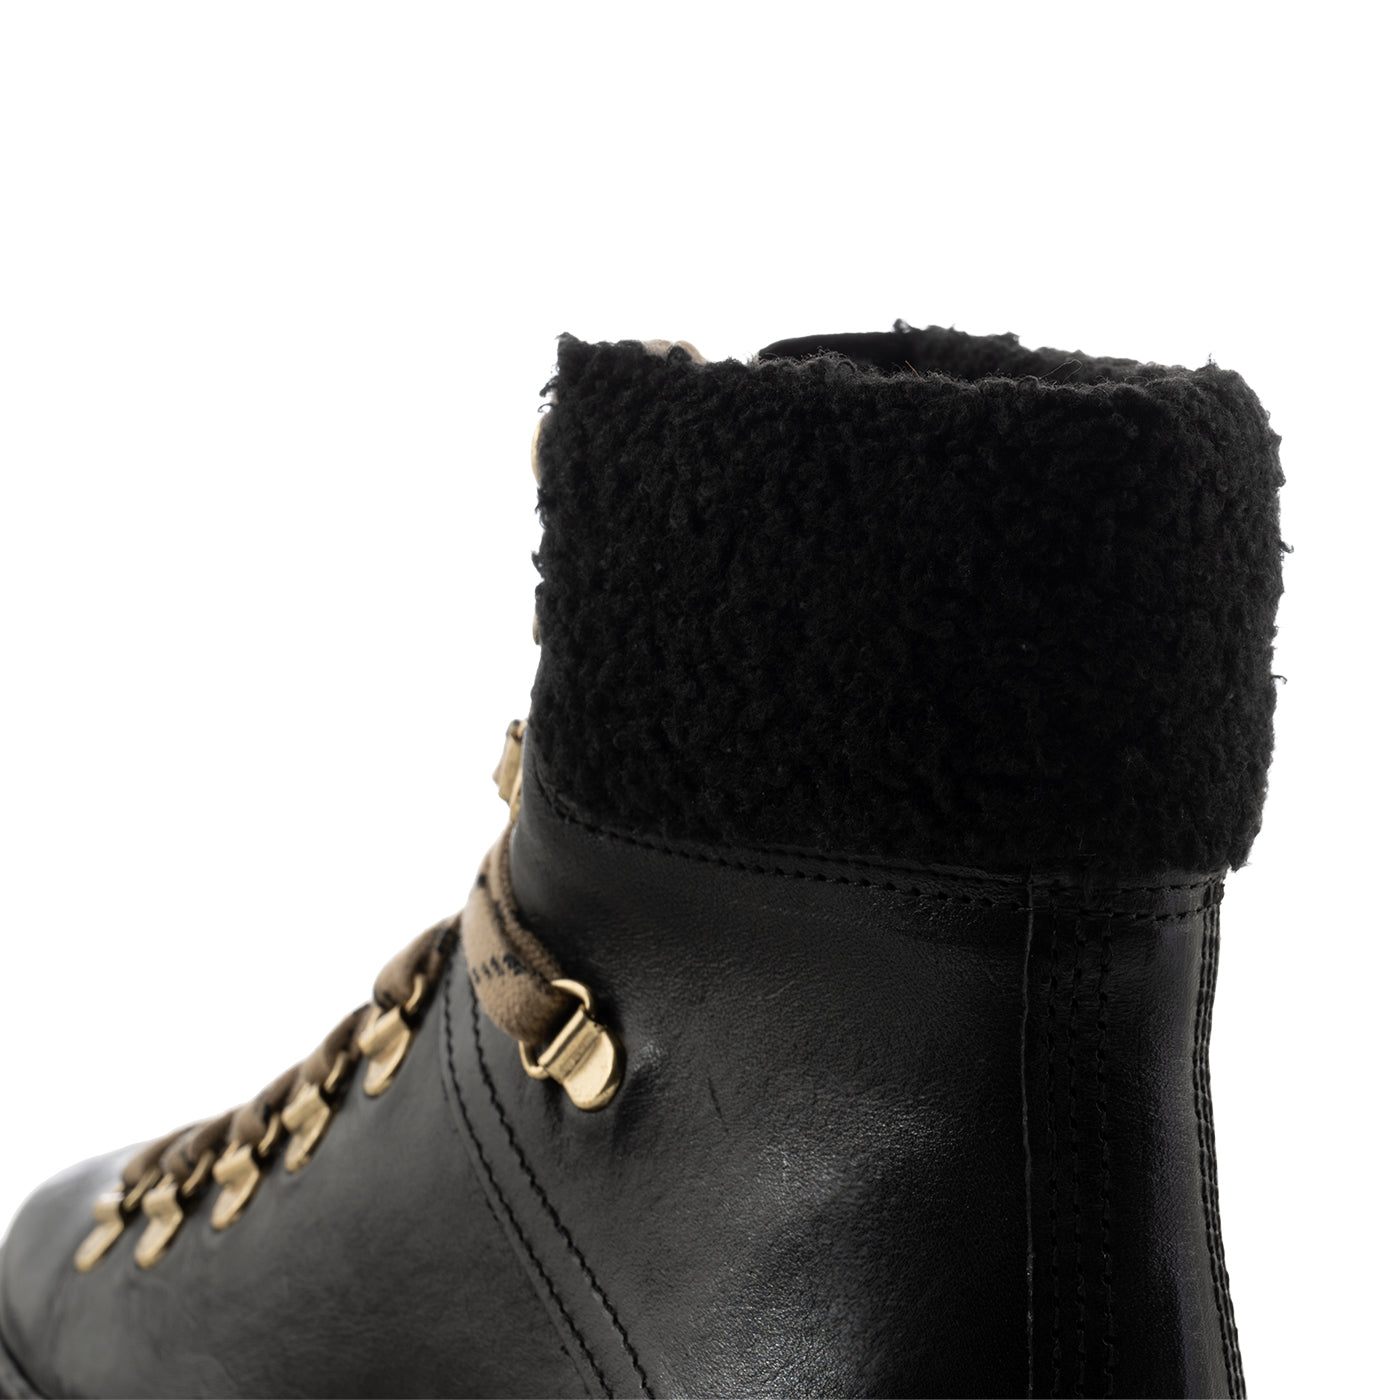 Udgående hvor som helst fokus Agda støvle læder forret - BLACK – SHOE THE BEAR - DK